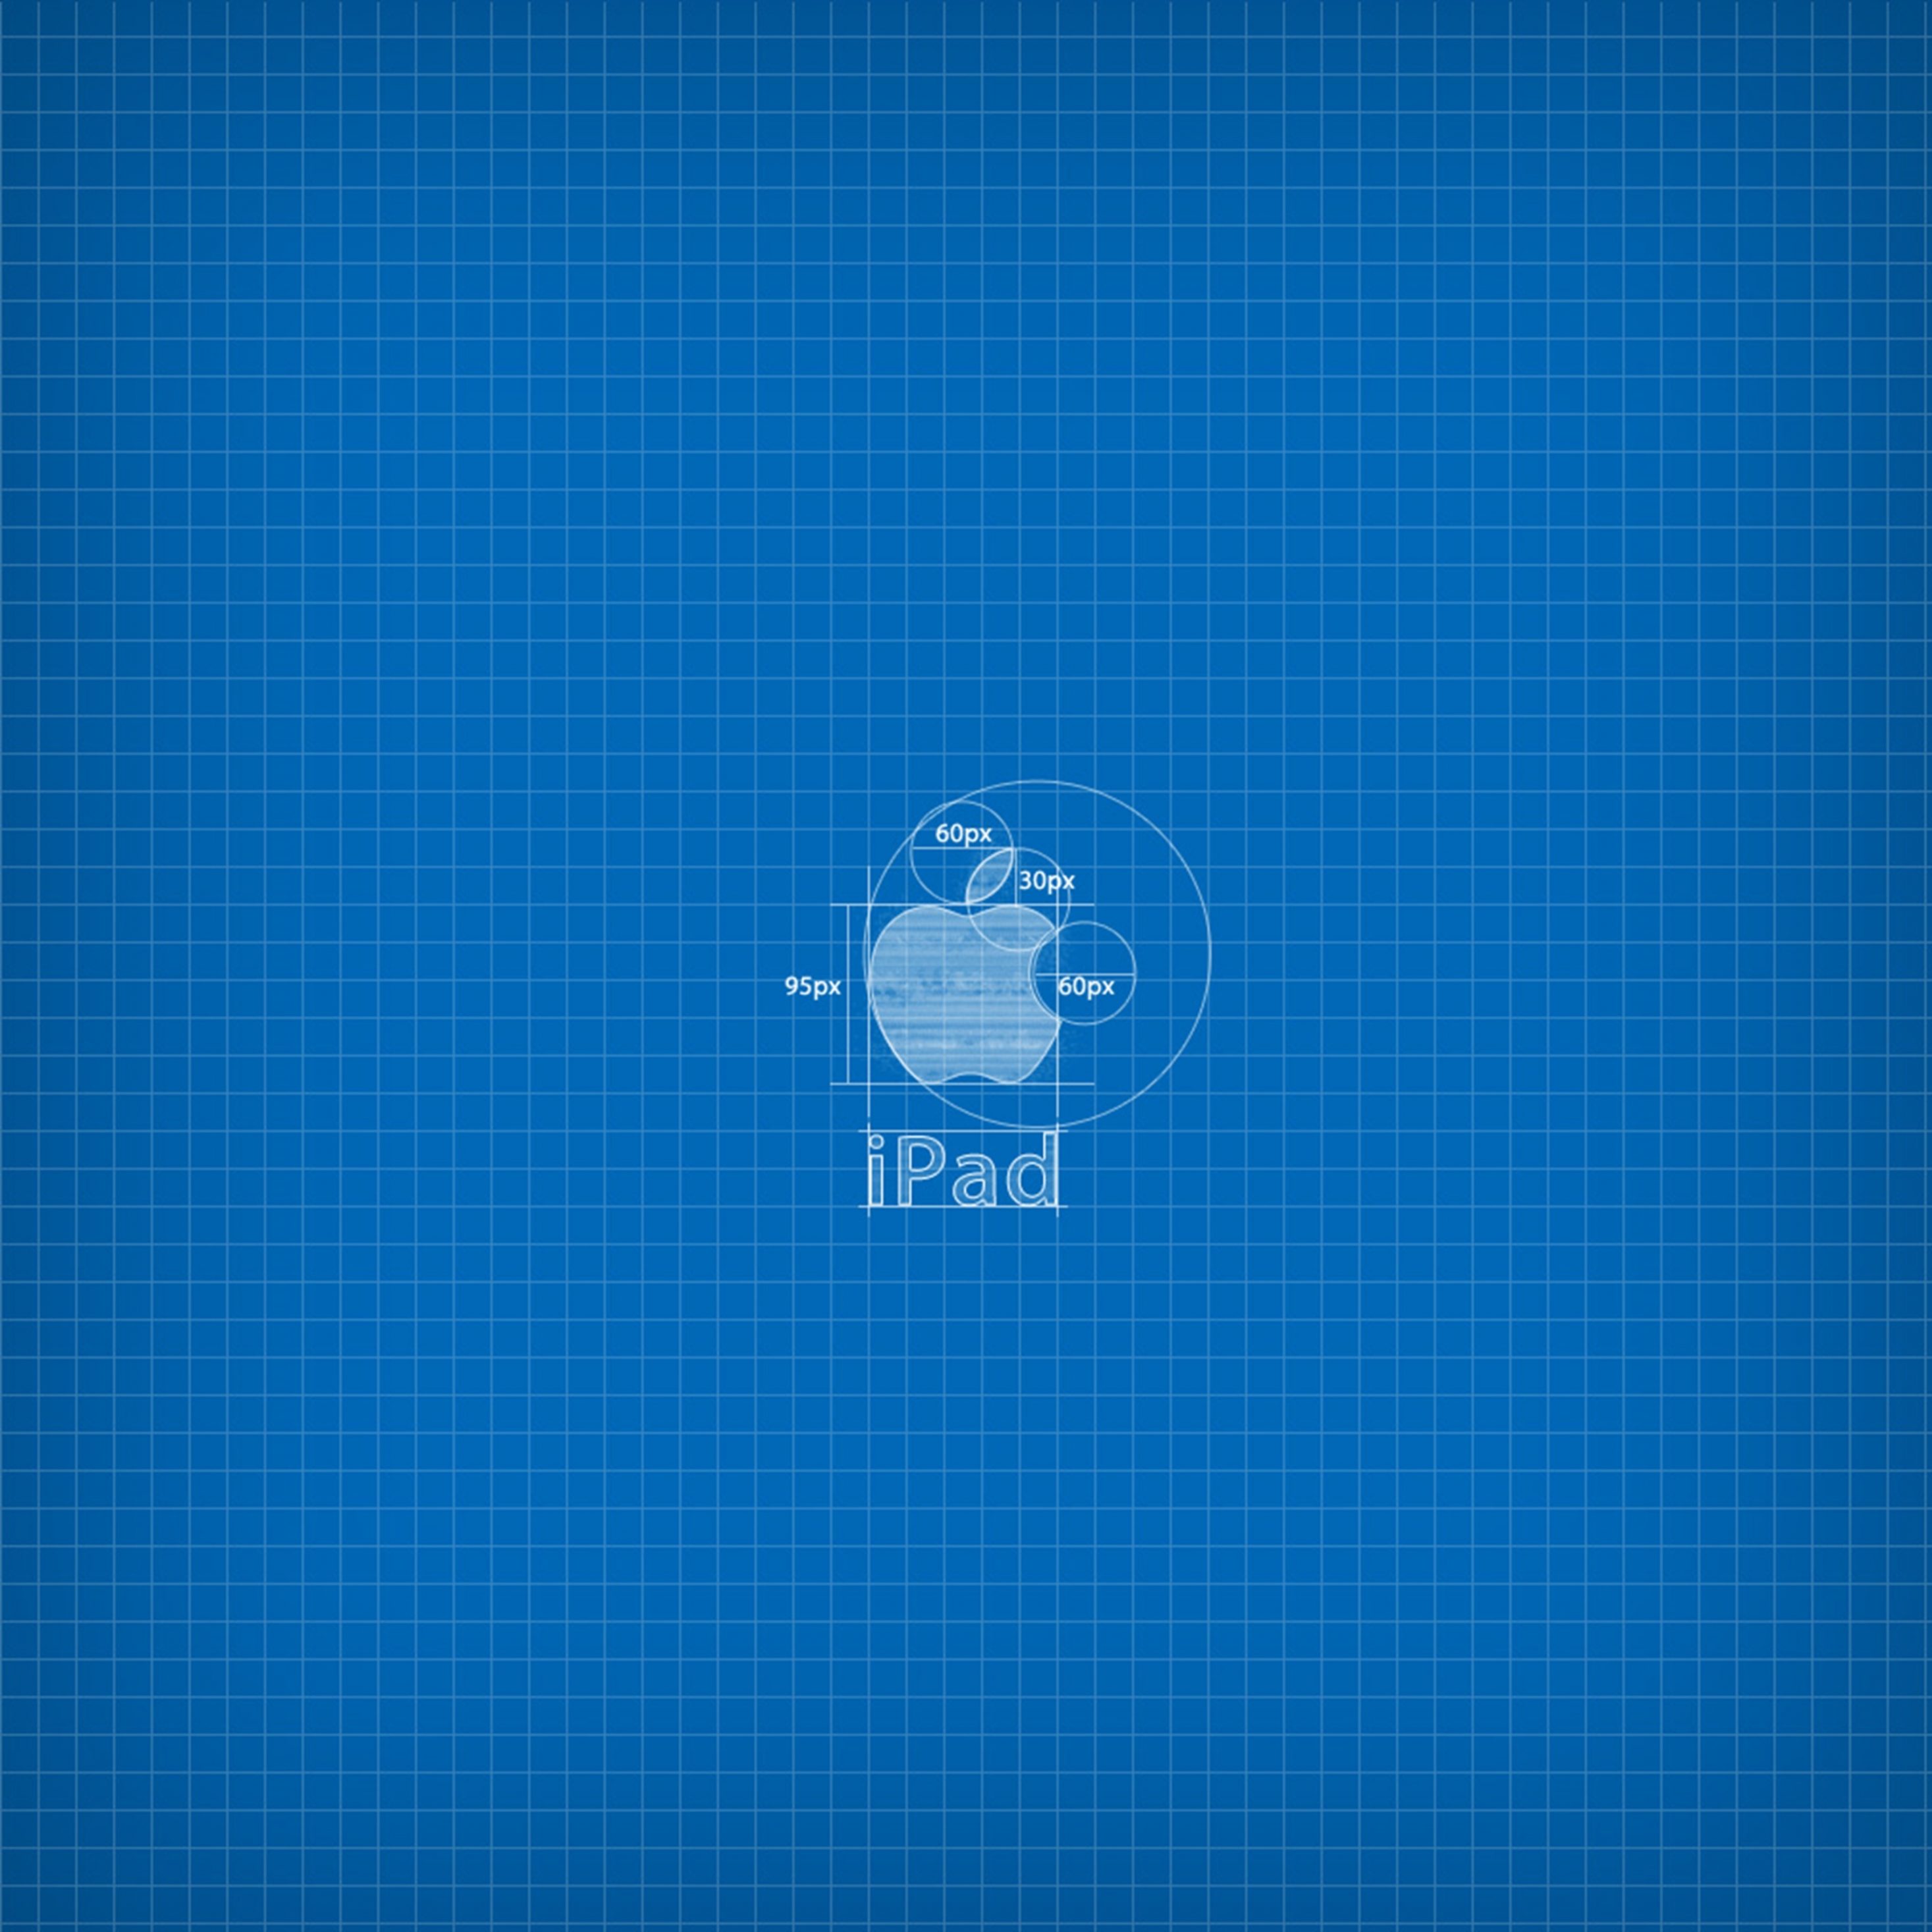 2934x2934 iOS iPad wallpaper 4k Apple Blueprint Ipad Wallpaper 2934x2934 pixels resolution